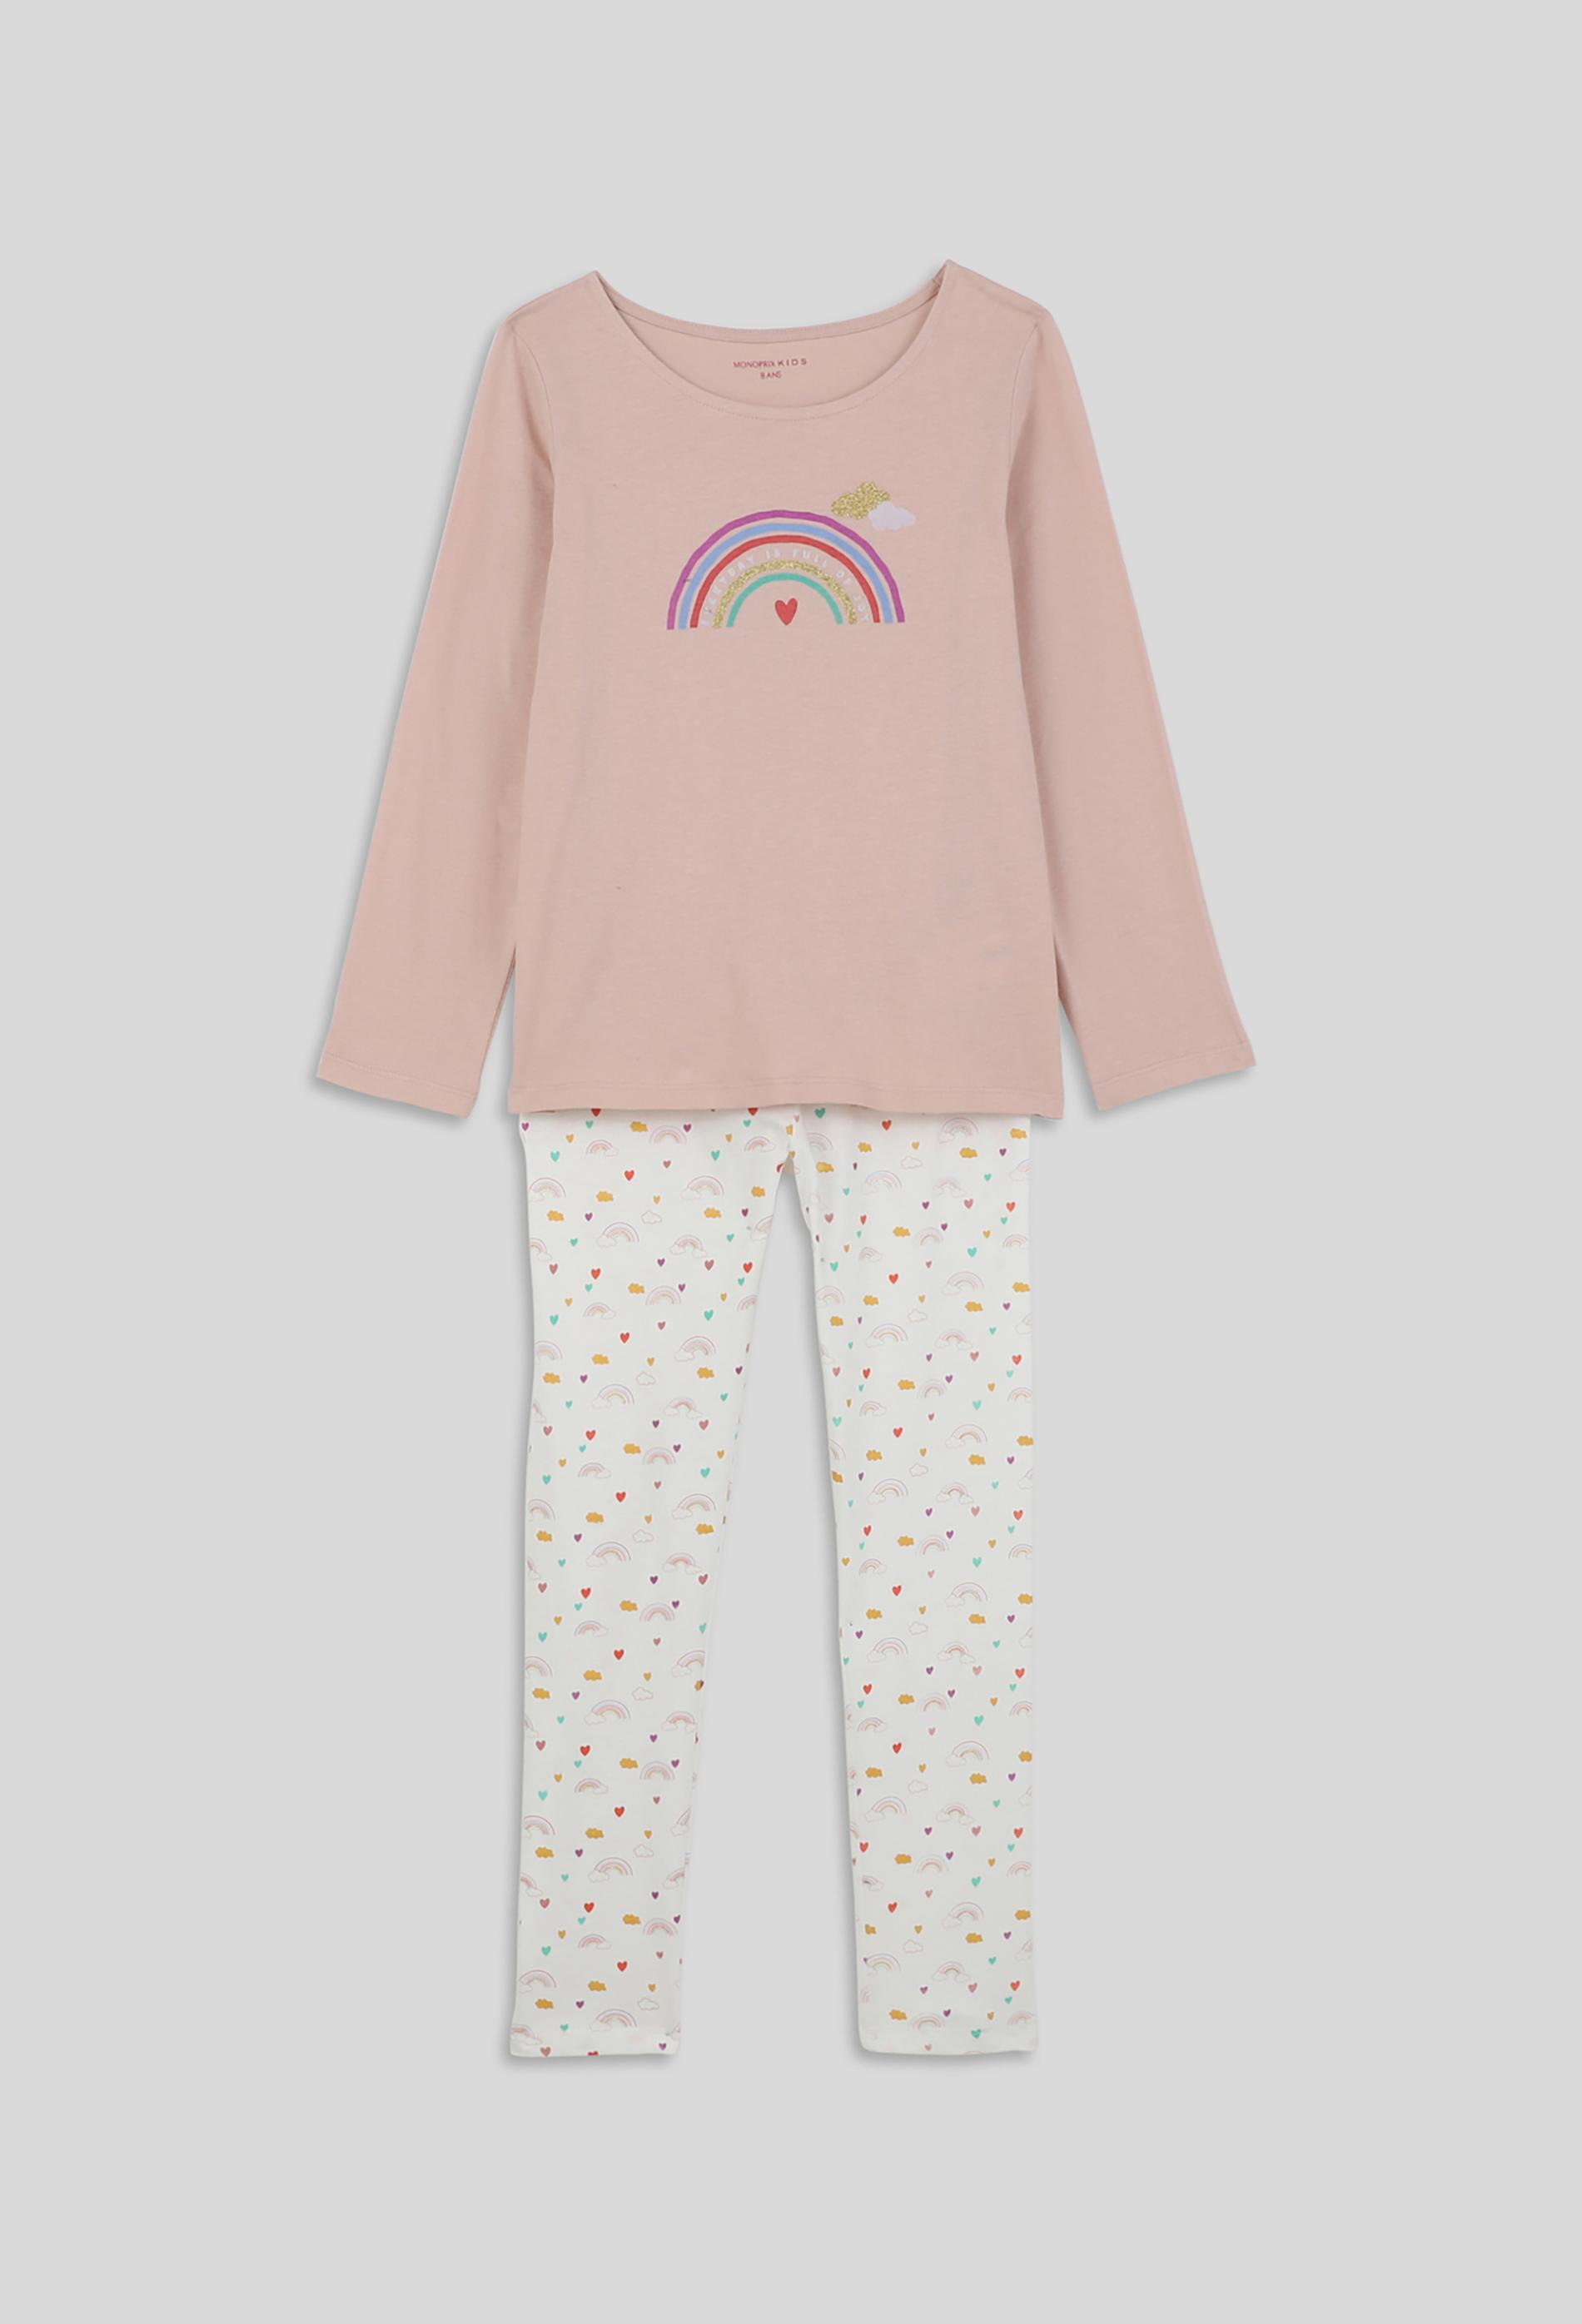 Pyjama long avec imprimé arc-en-ciel, BIO 3 ans rose clair